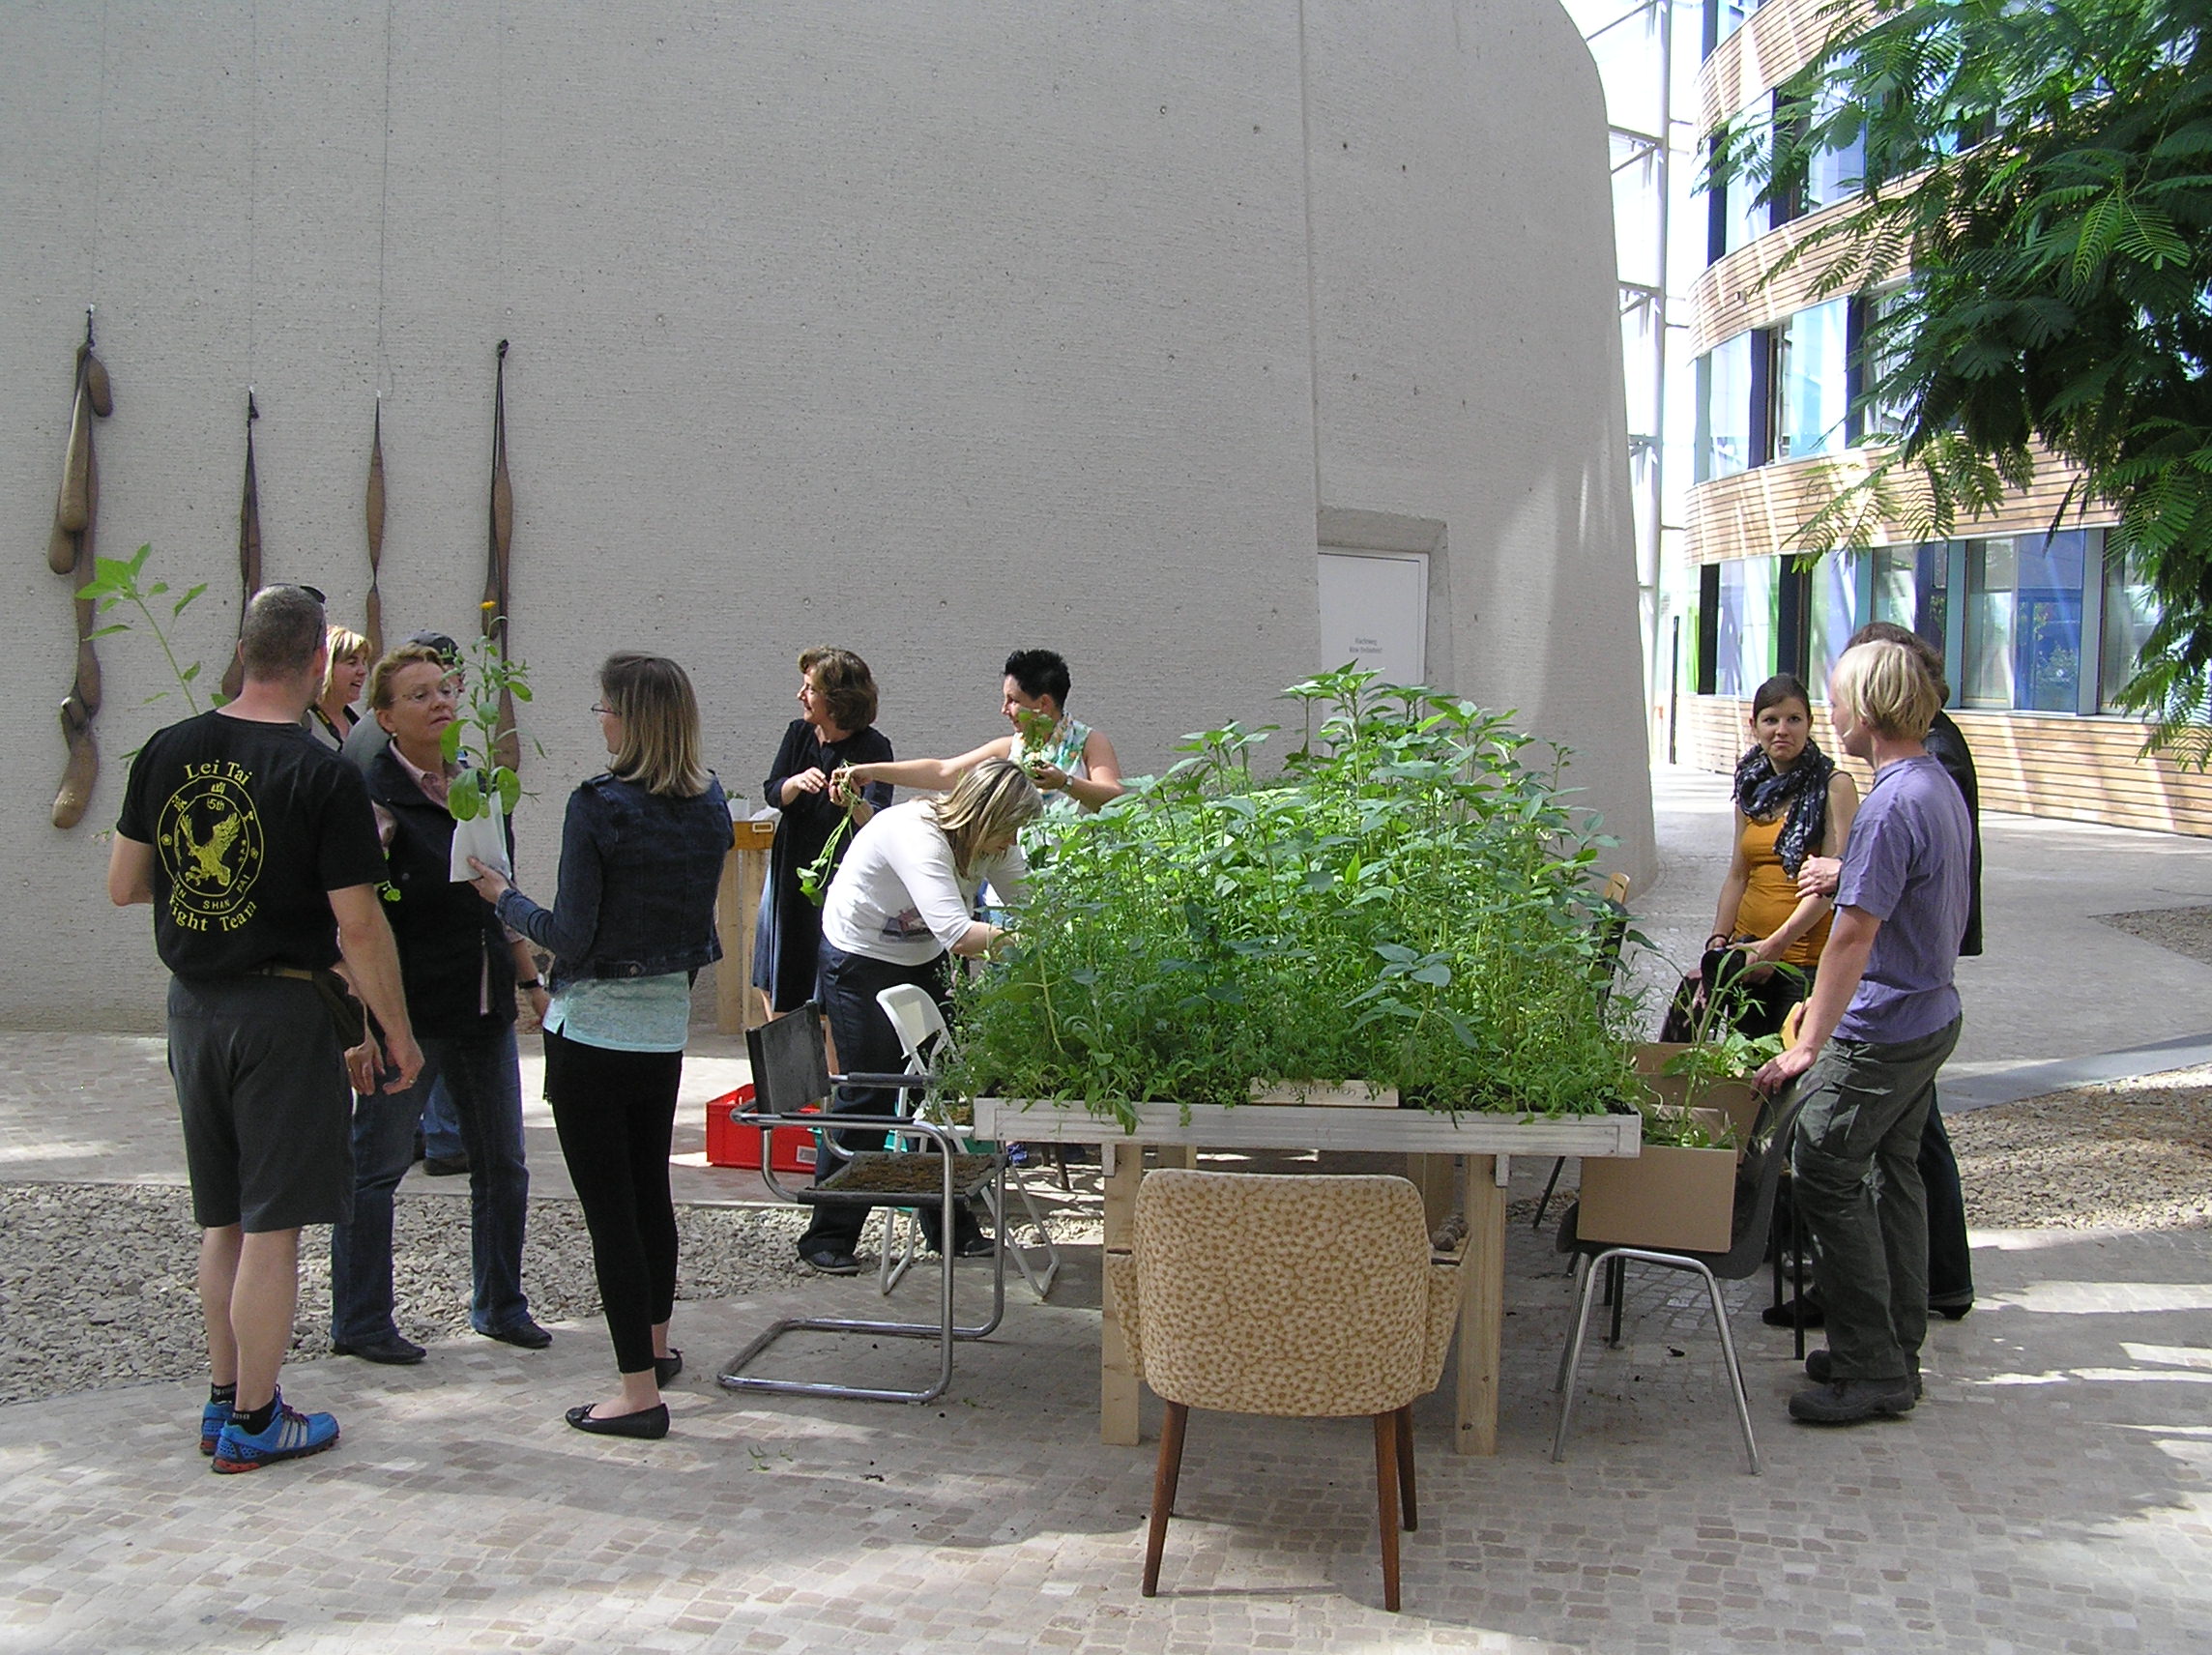 Forum des UBA: Garteninstallation mit hochgewachsenen Pflanzen und Menschen, die diese besichtigen